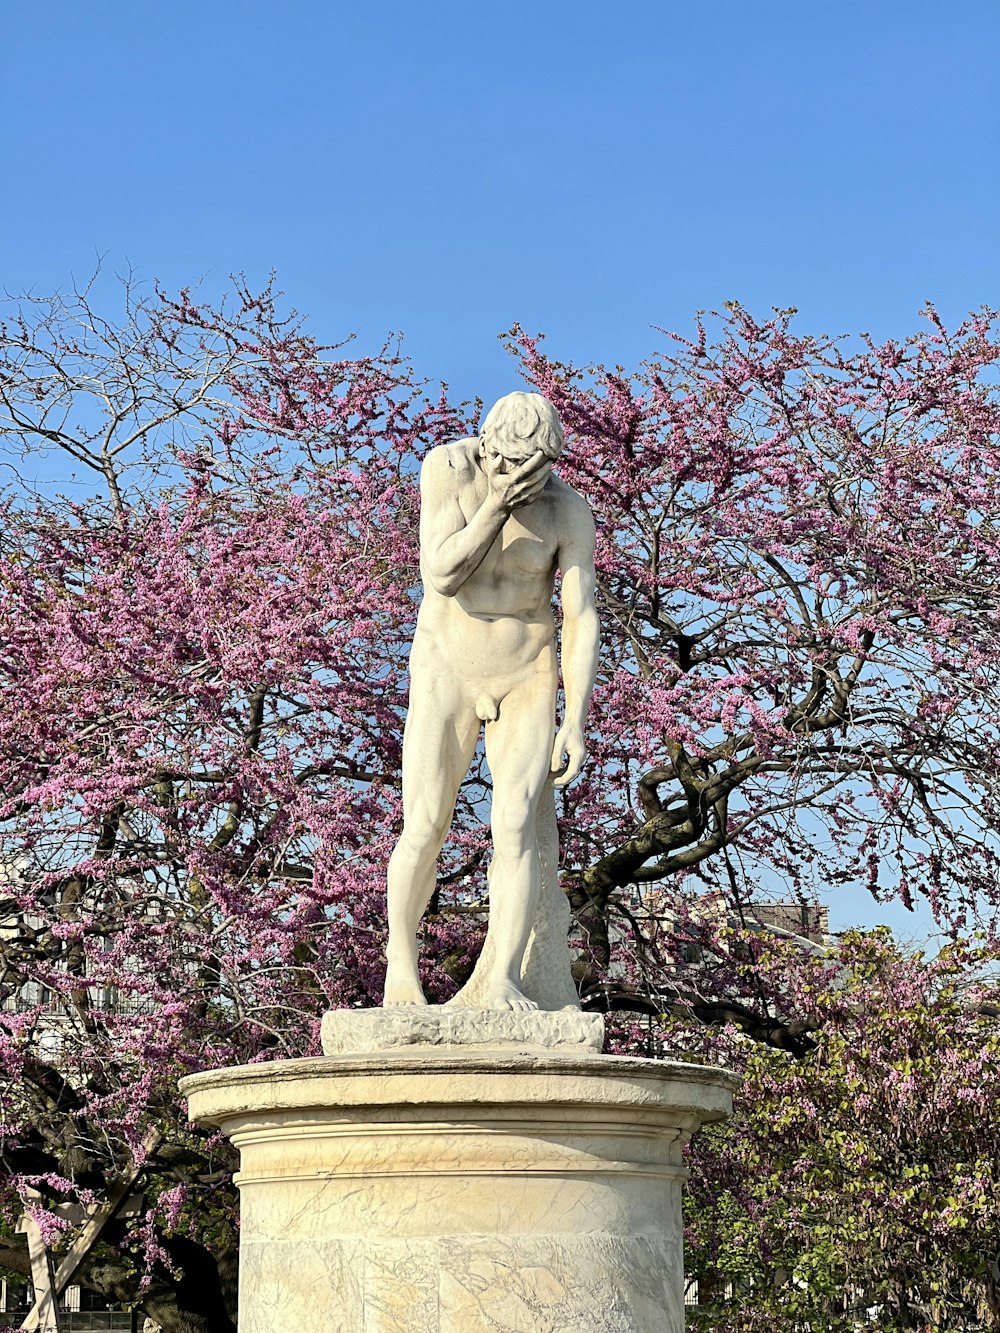 uma estátua de um homem em pé na frente de uma árvore